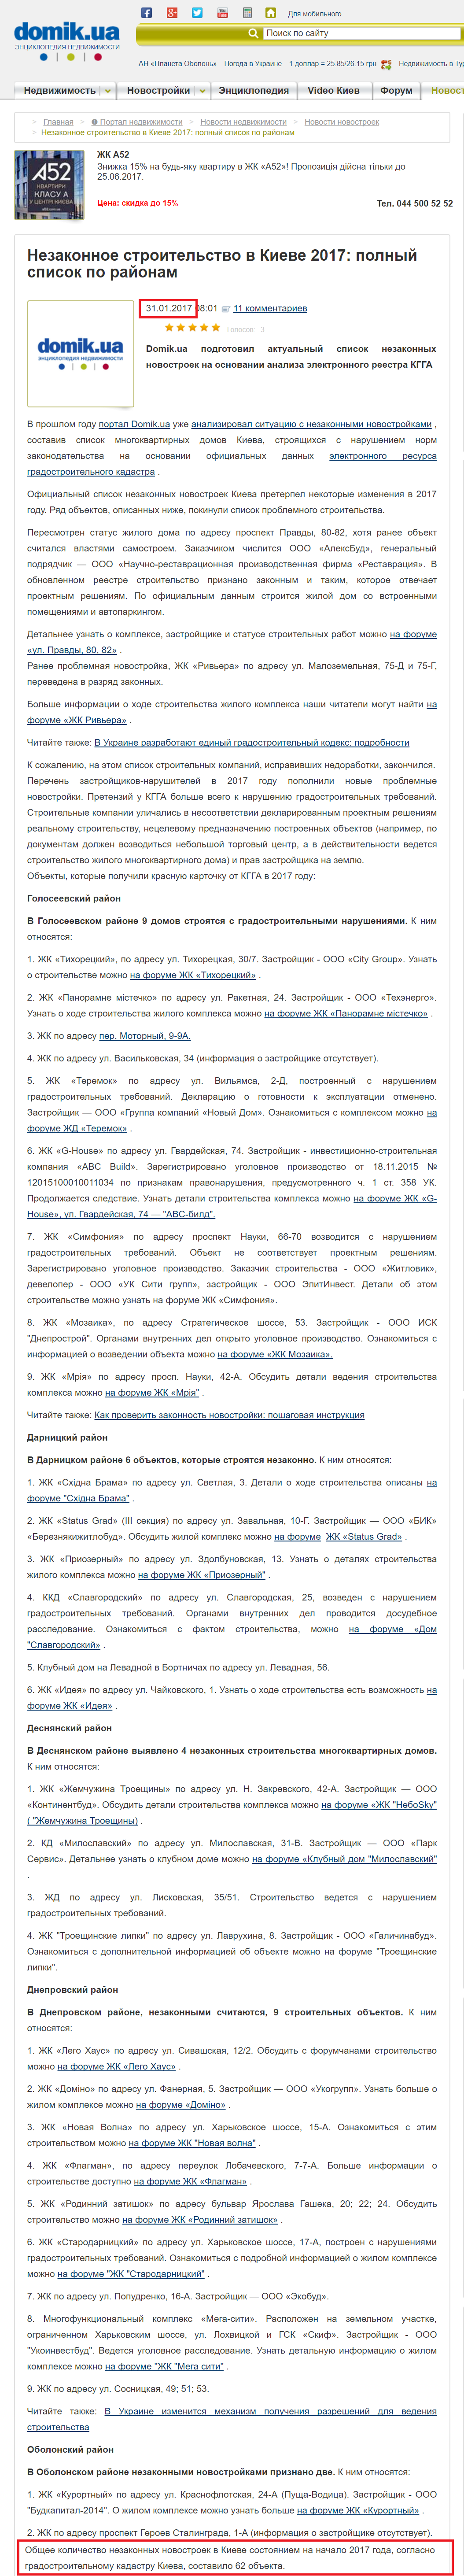 http://domik.ua/novosti/nezakonnoe-stroitelstvo-v-kieve-2017-polnyj-spisok-po-rajonam-n250060.html